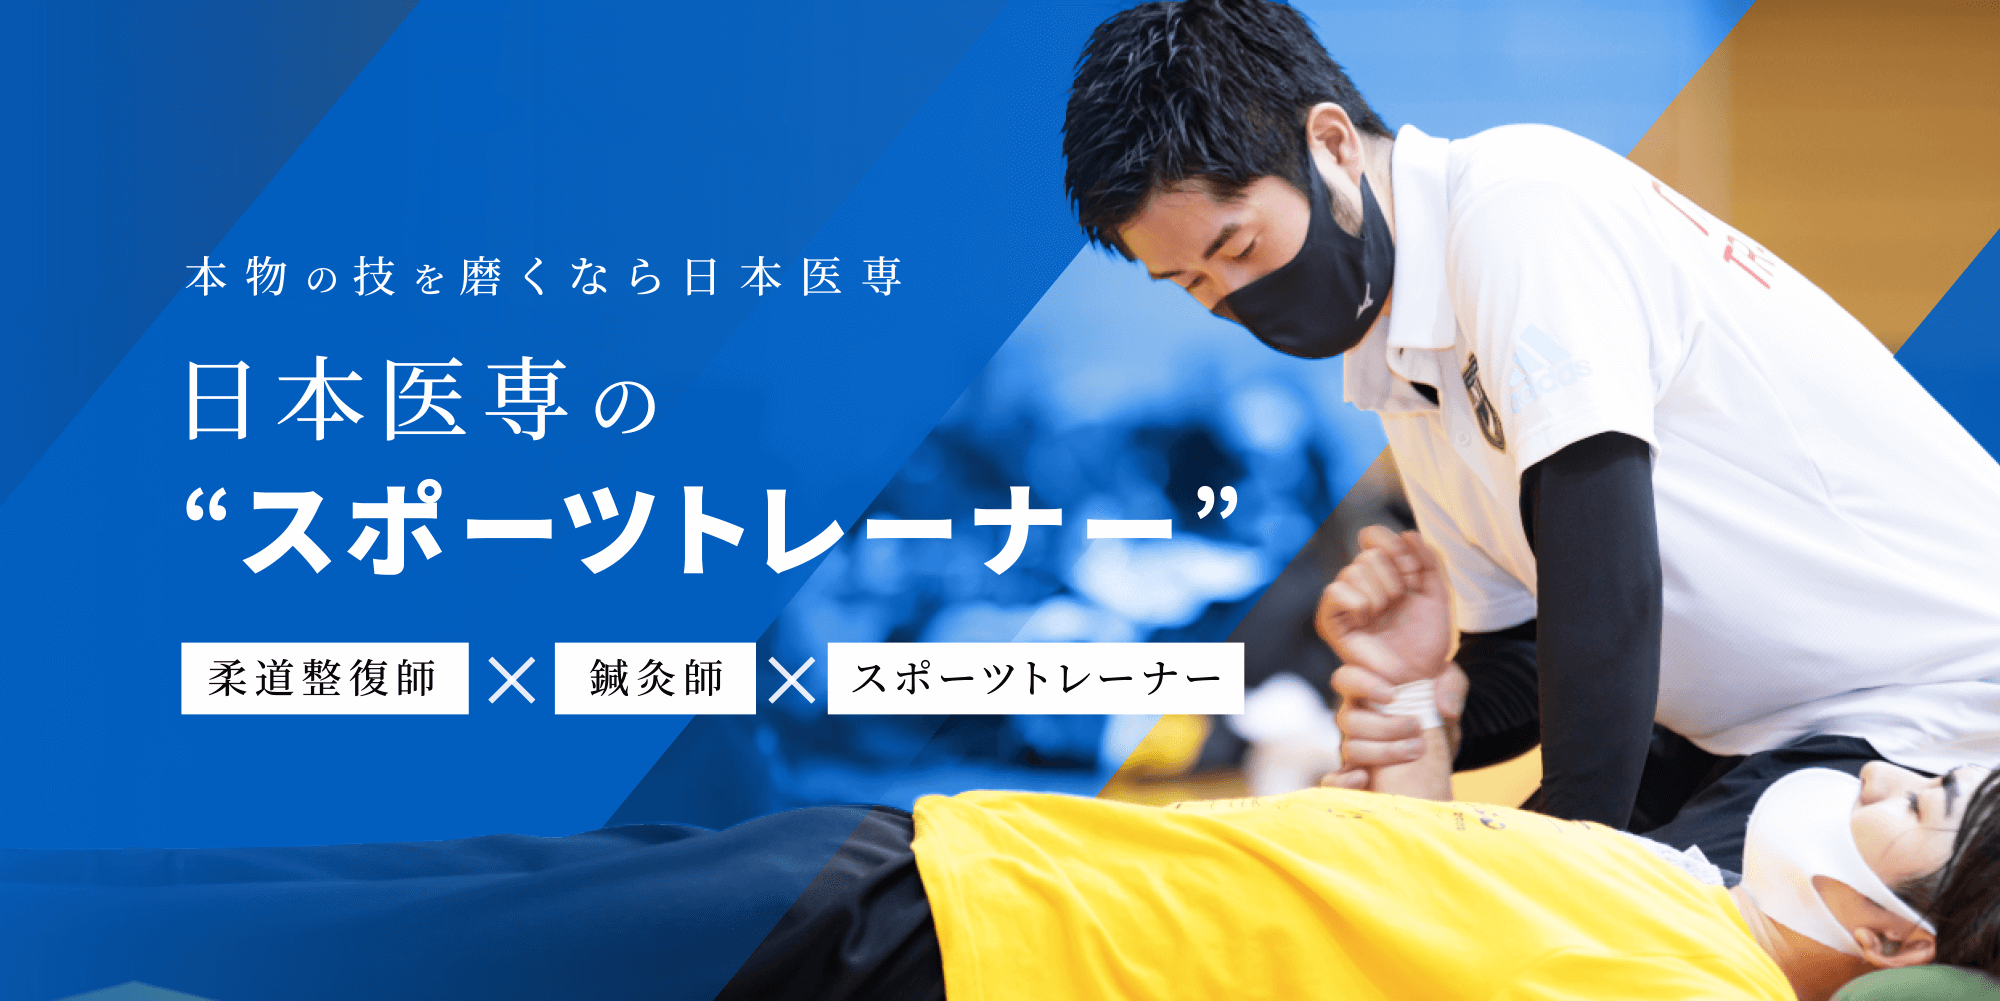 本物の技を磨くなら日本医専 日本医専の“スポーツトレーナー”柔道整復師×鍼灸師×スポーツトレーナー